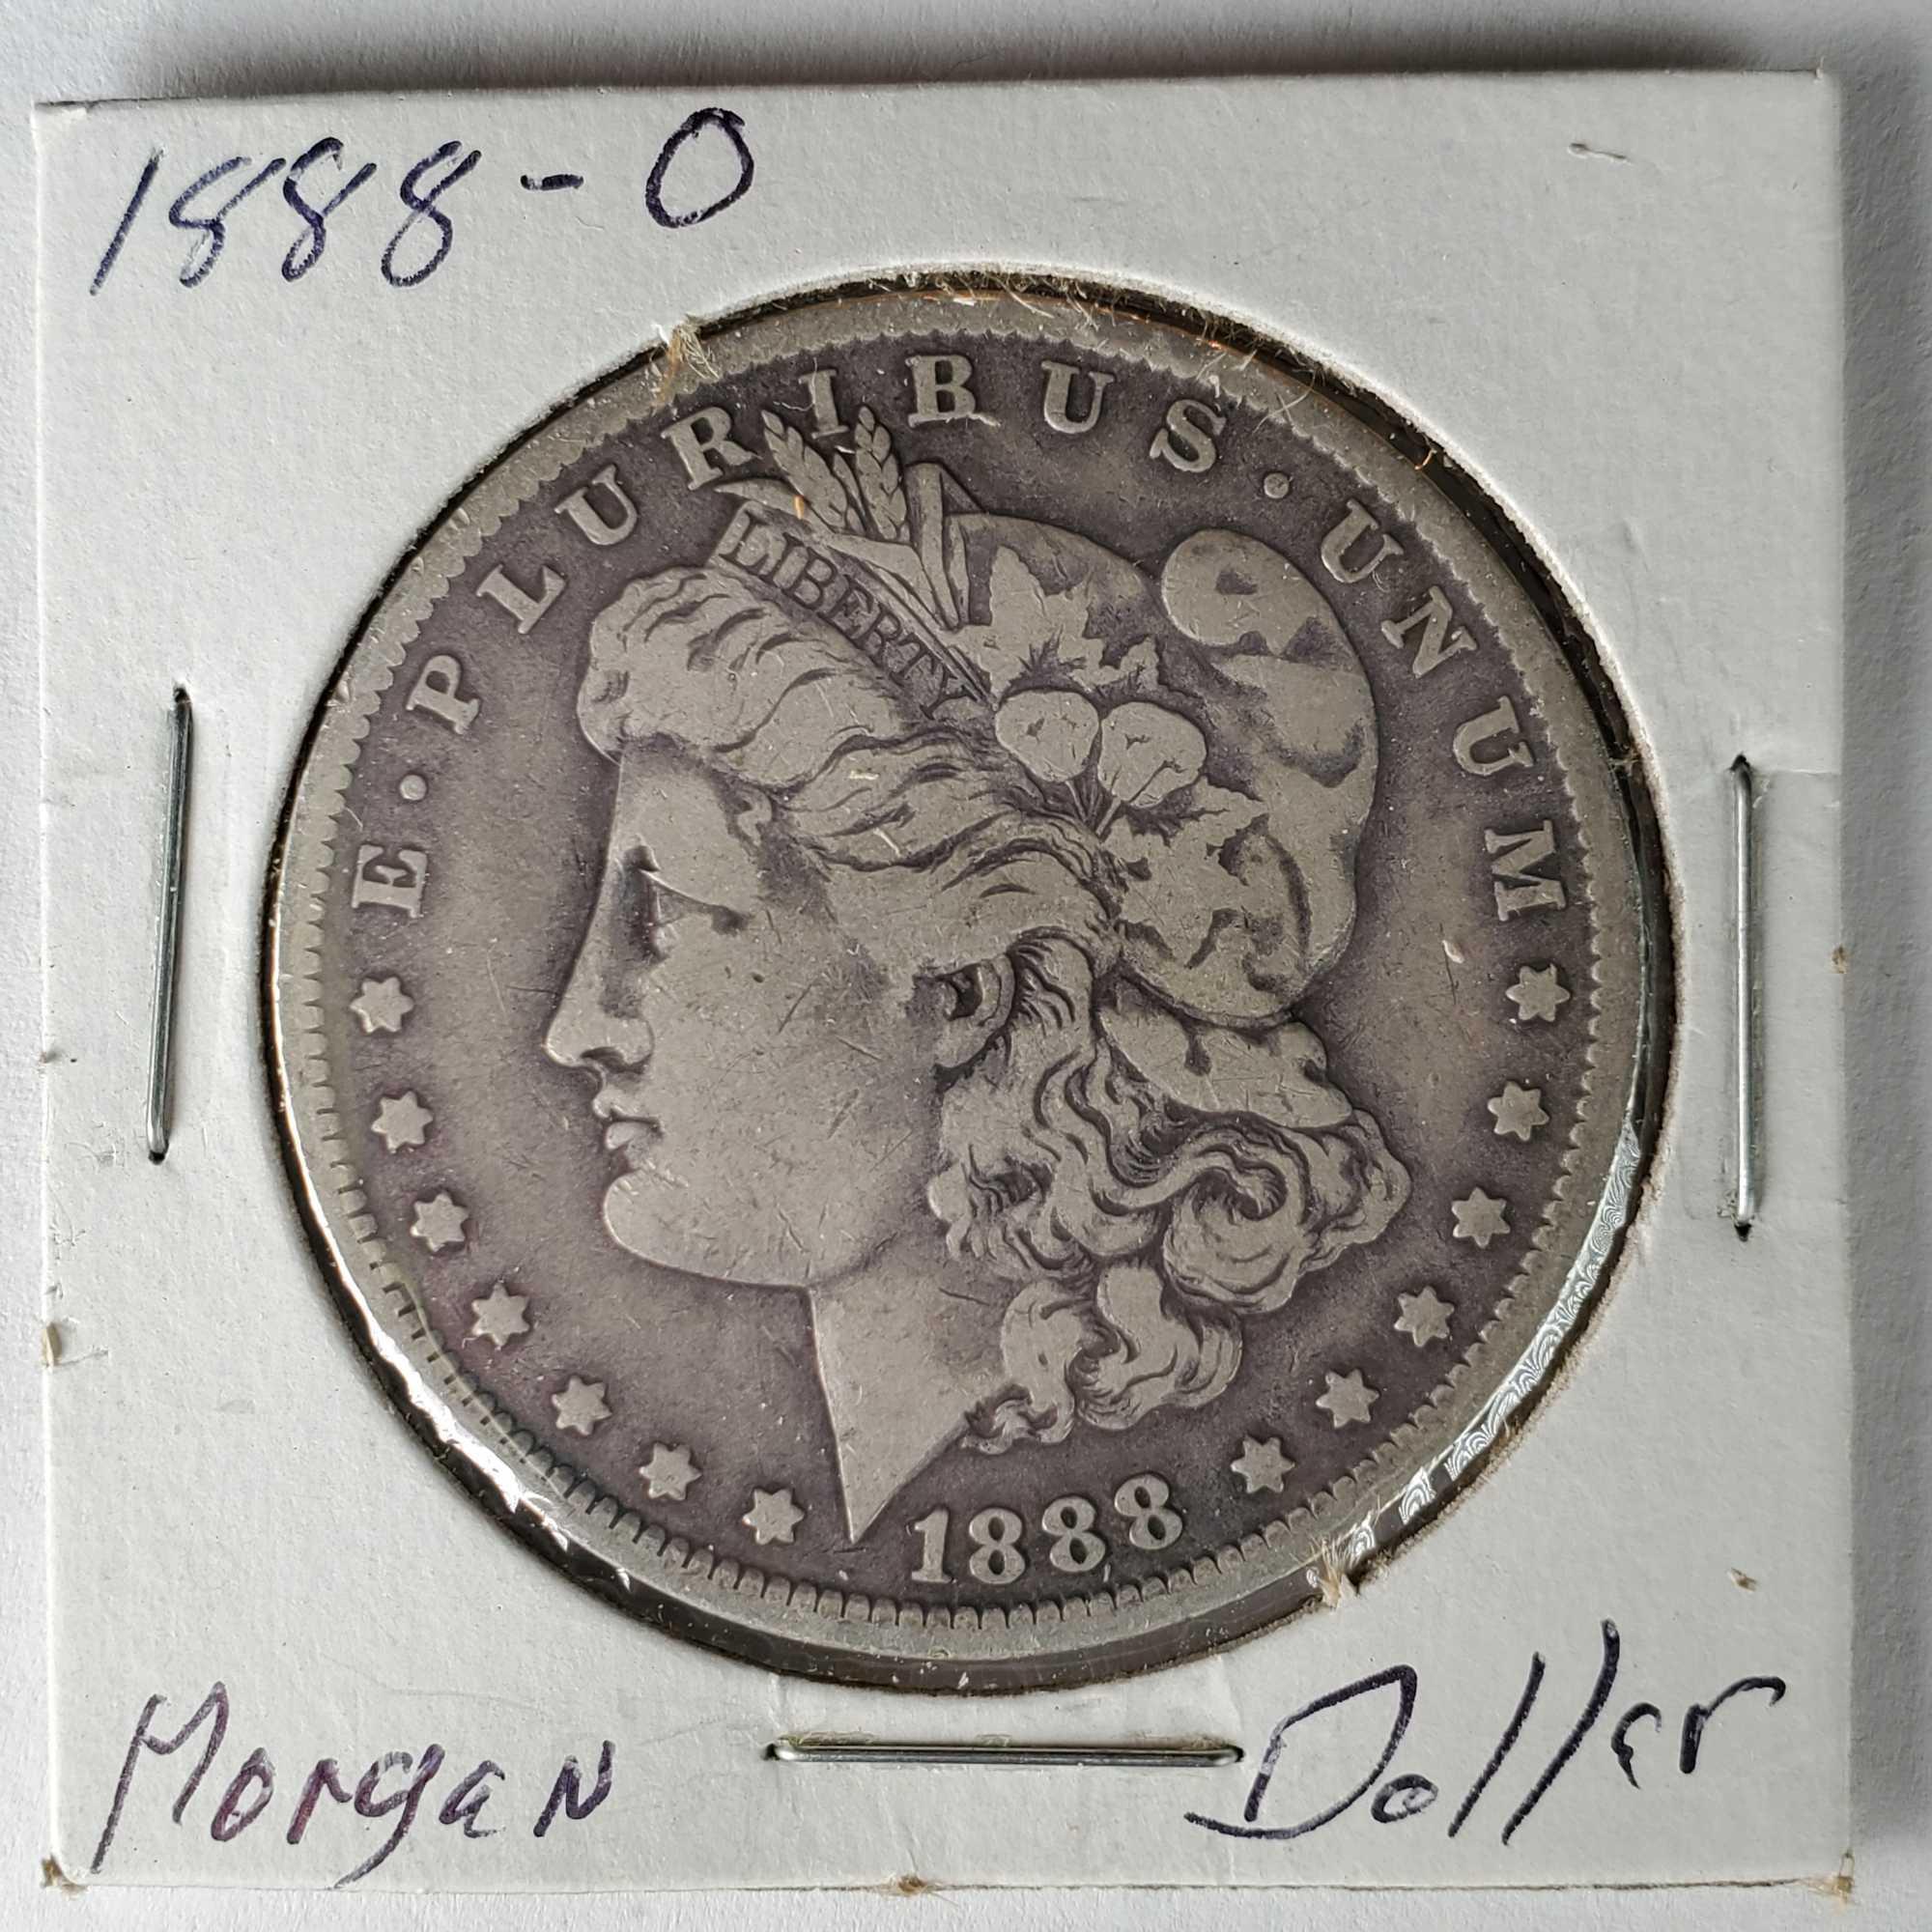 3 US Silver New Orleans Mint Morgan Dollars - 1886-O, 1887-O and 1888-O